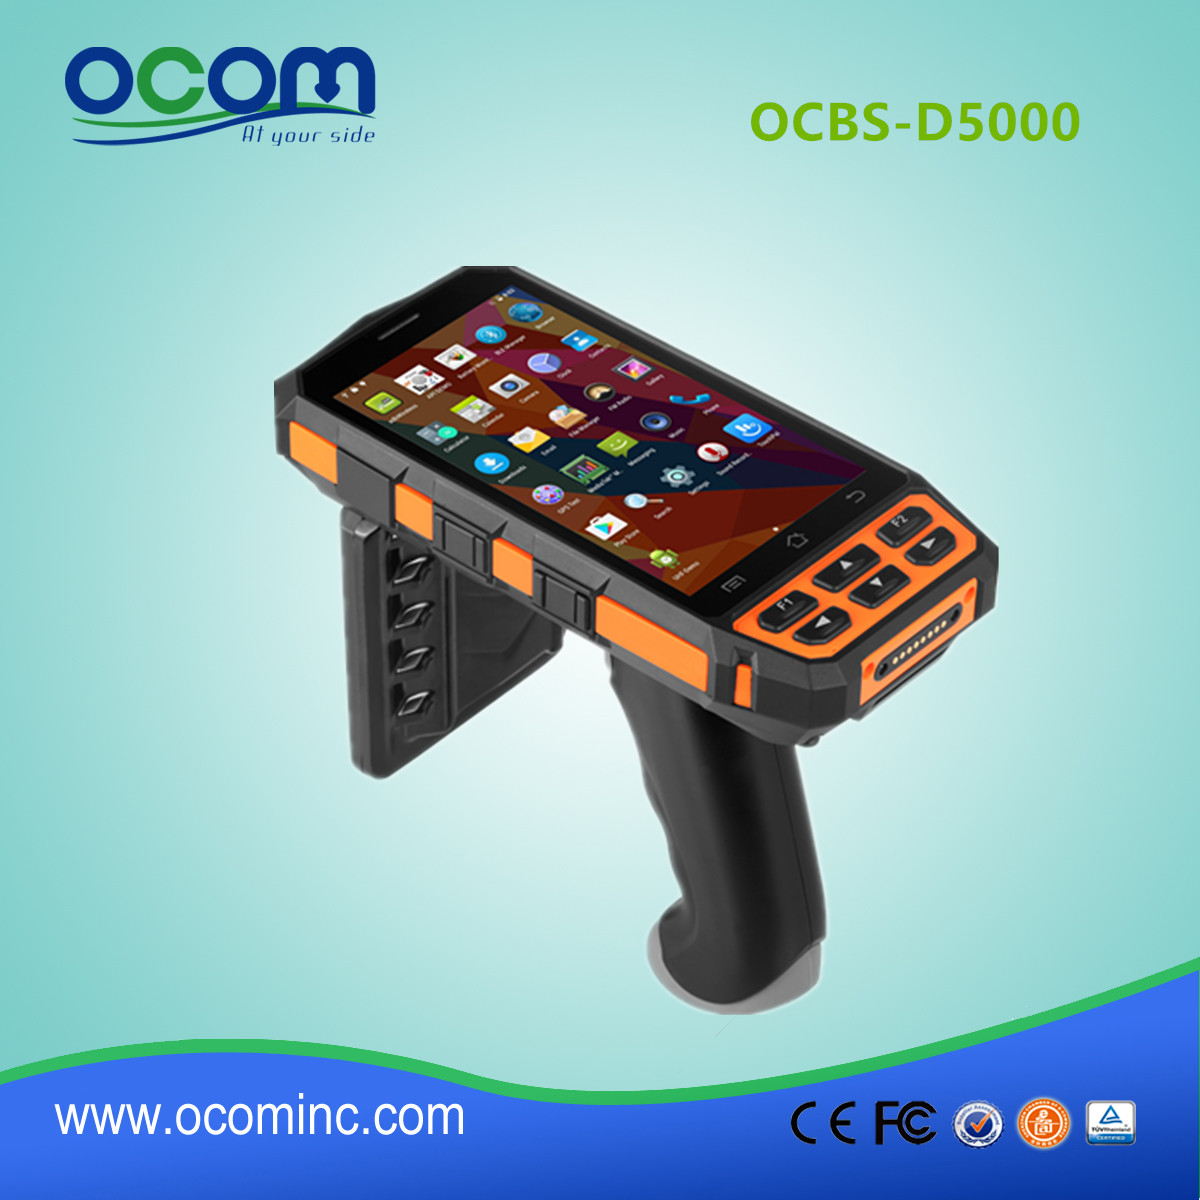 OCBS-D5000 restaurant tenu dans la main robuste android OS industriel pda RFID lecteur